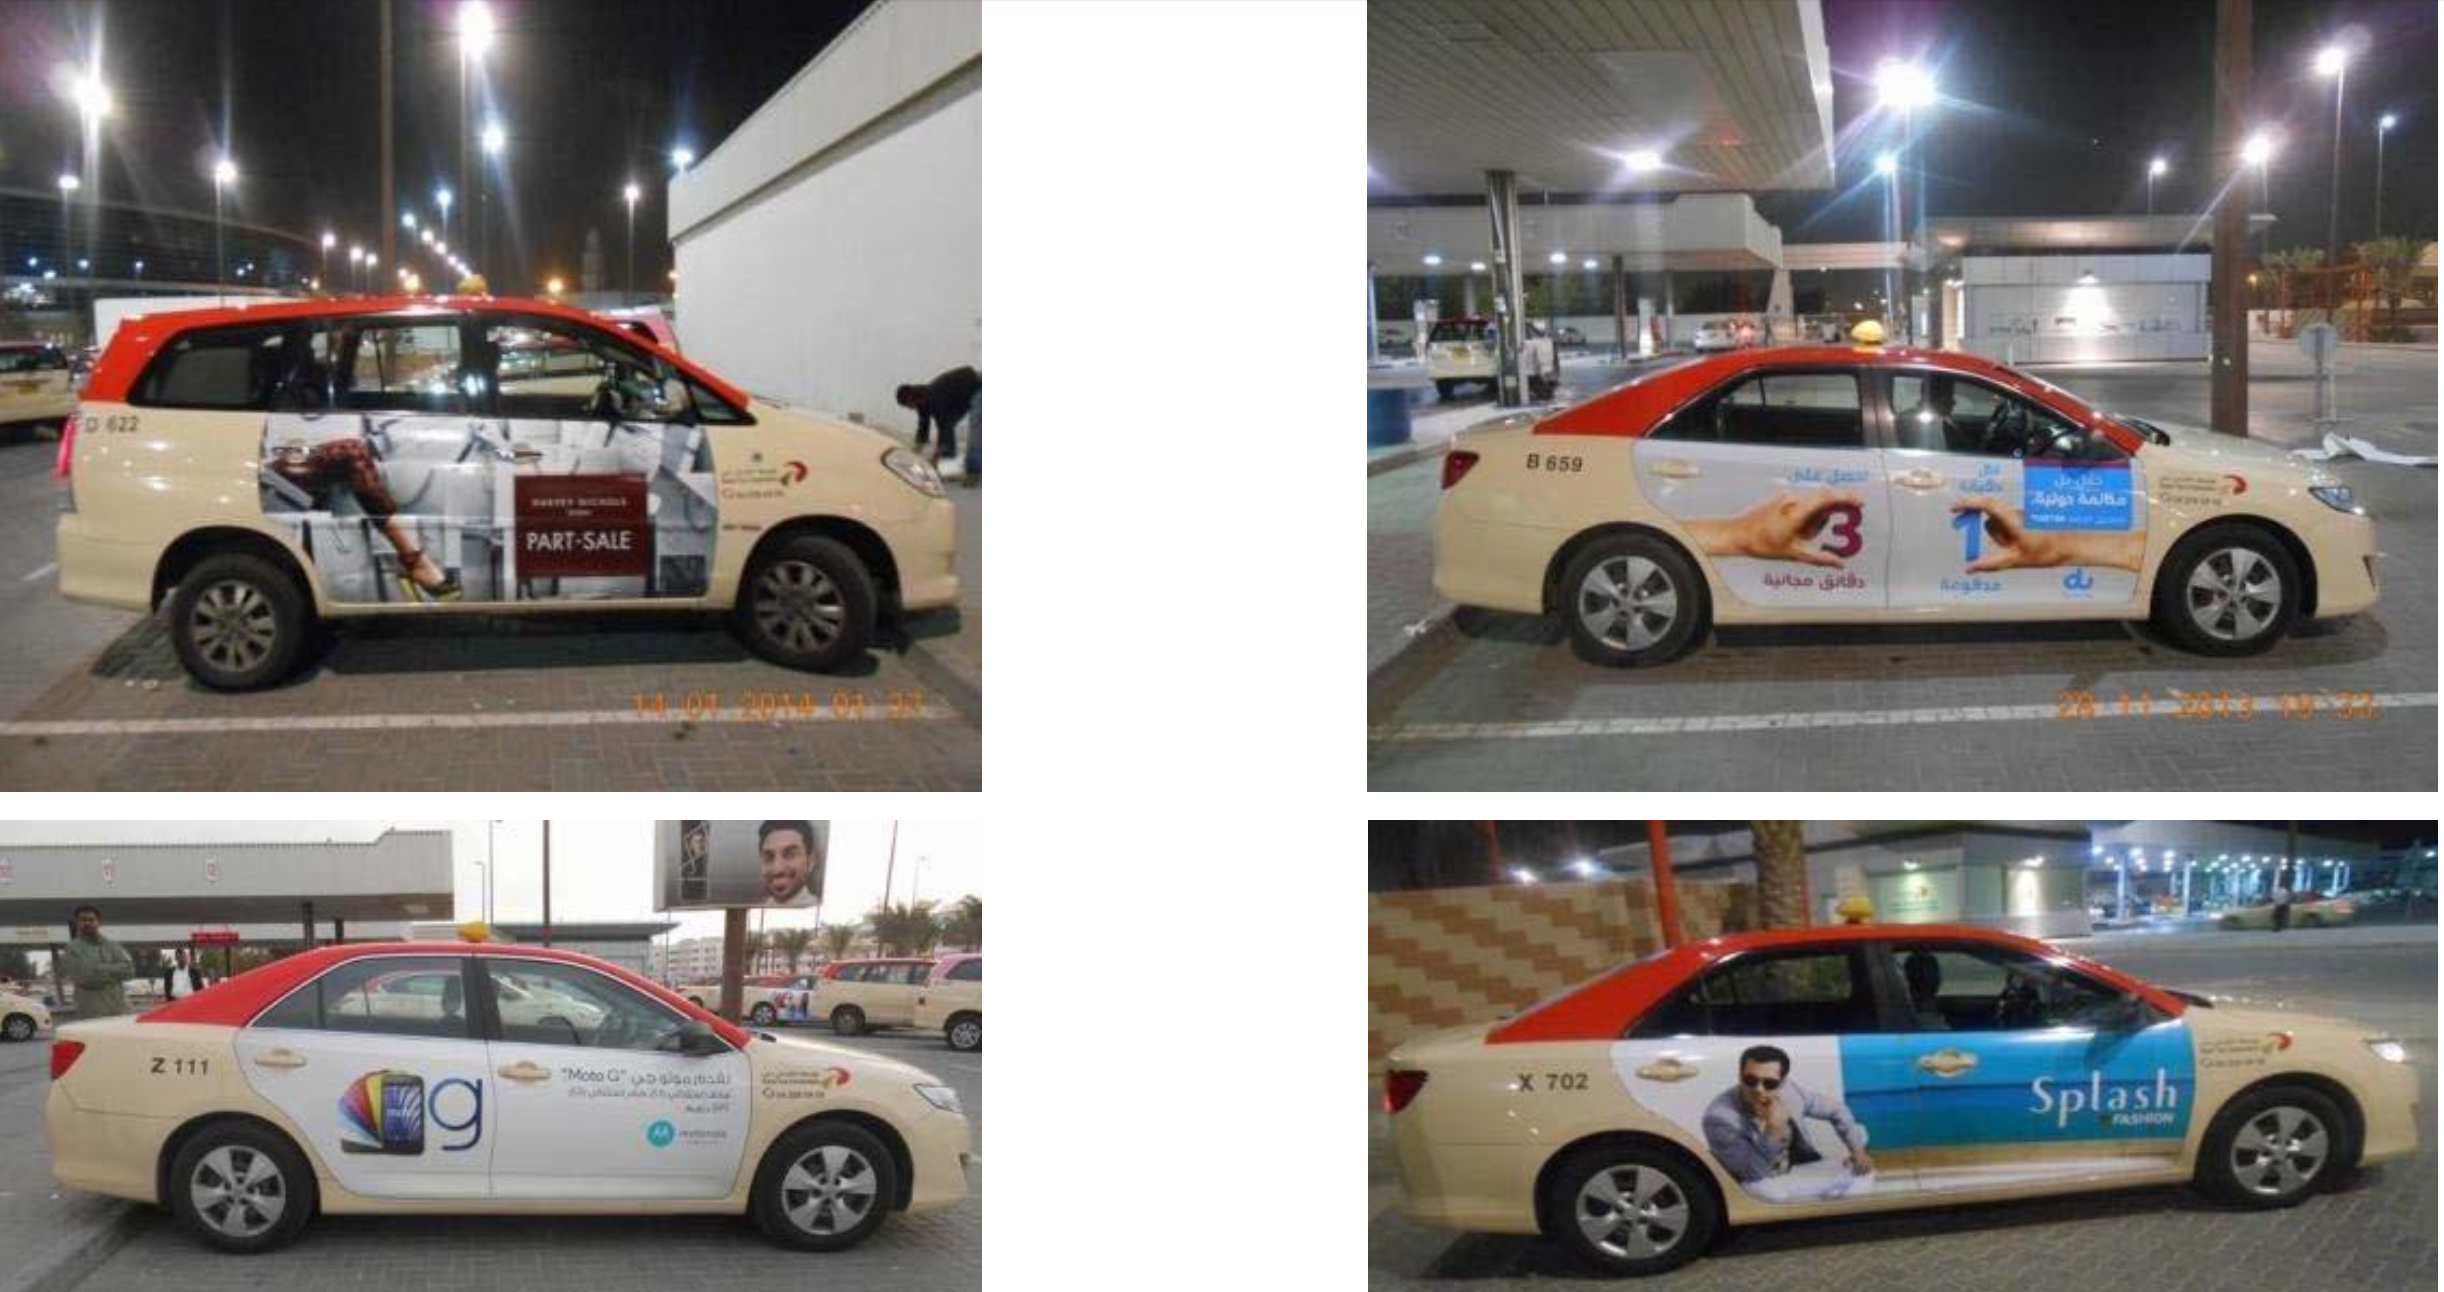 Taxi Advertising in Dubai.